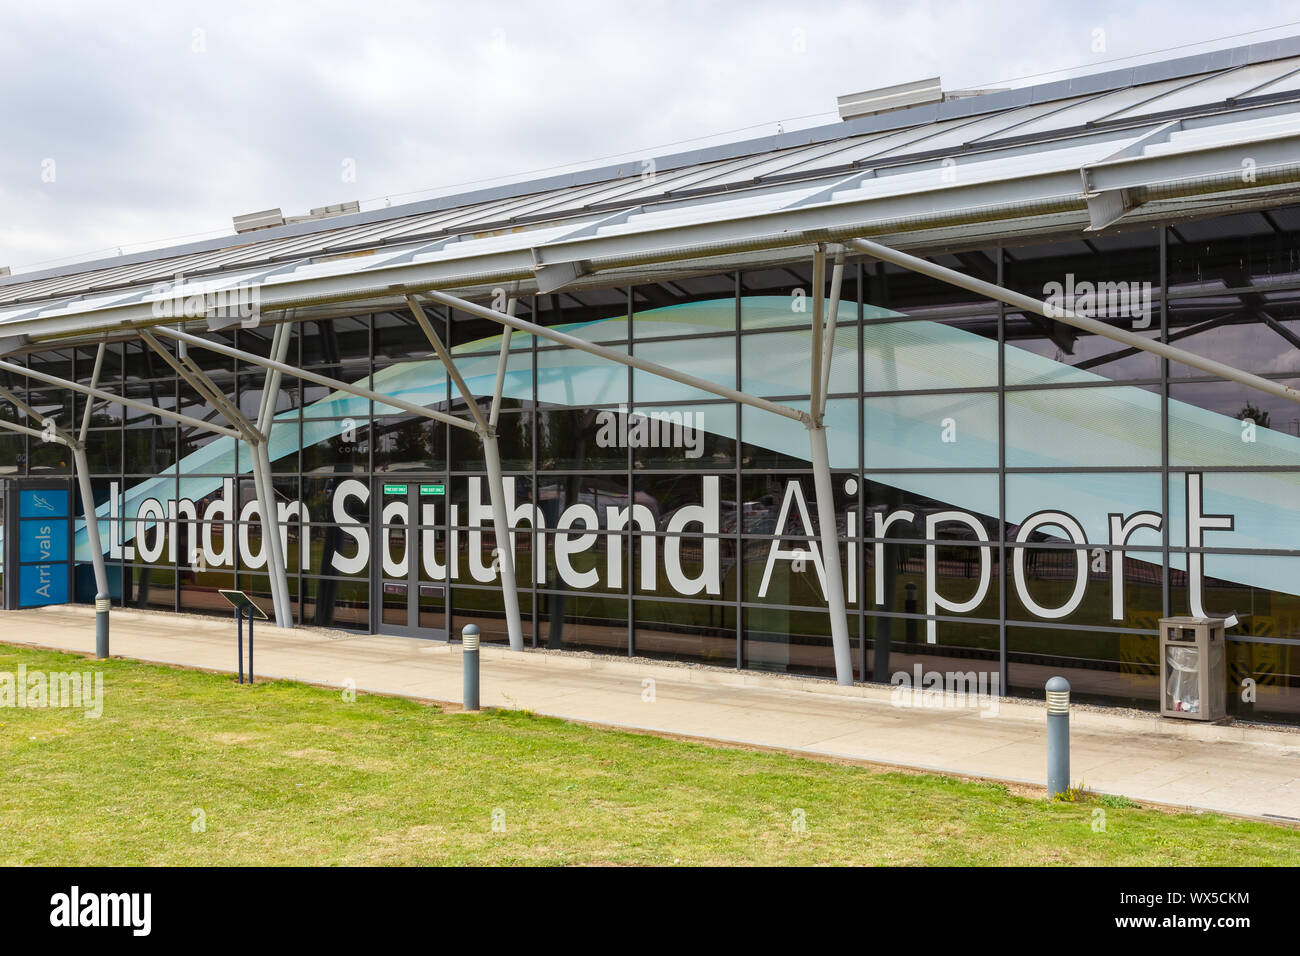 Southend, Großbritannien - 7. Juli 2019: Terminal des Flughafen Southend (SEN) im Vereinigten Königreich. Stockfoto